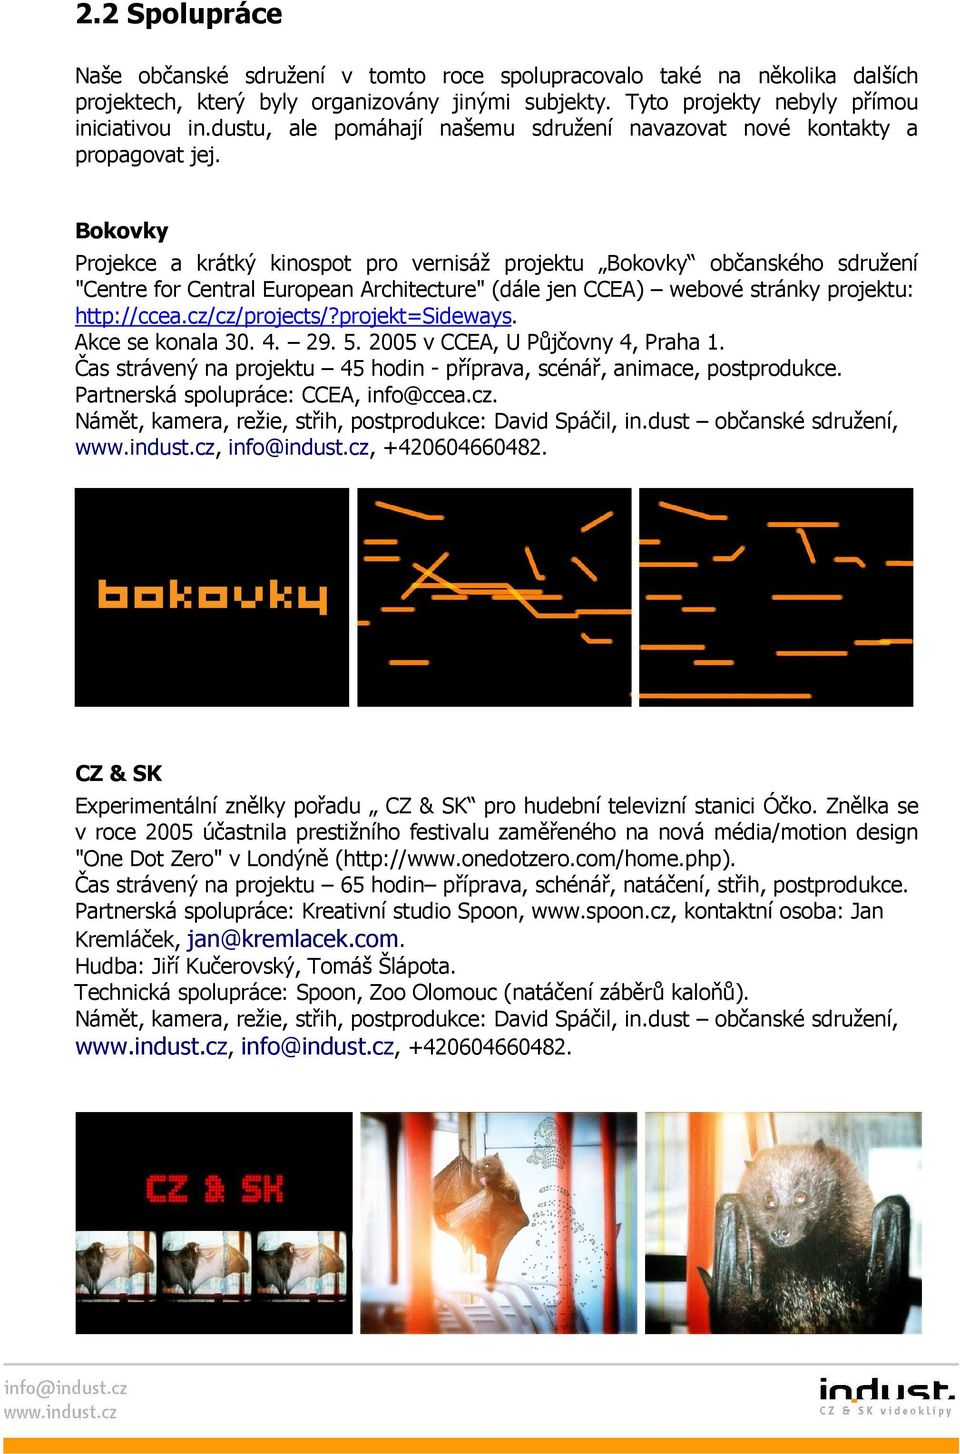 Bokovky Projekce a krátký kinospot pro vernisáž projektu Bokovky občanského sdružení "Centre for Central European Architecture" (dále jen CCEA) webové stránky projektu: http://ccea.cz/cz/projects/?